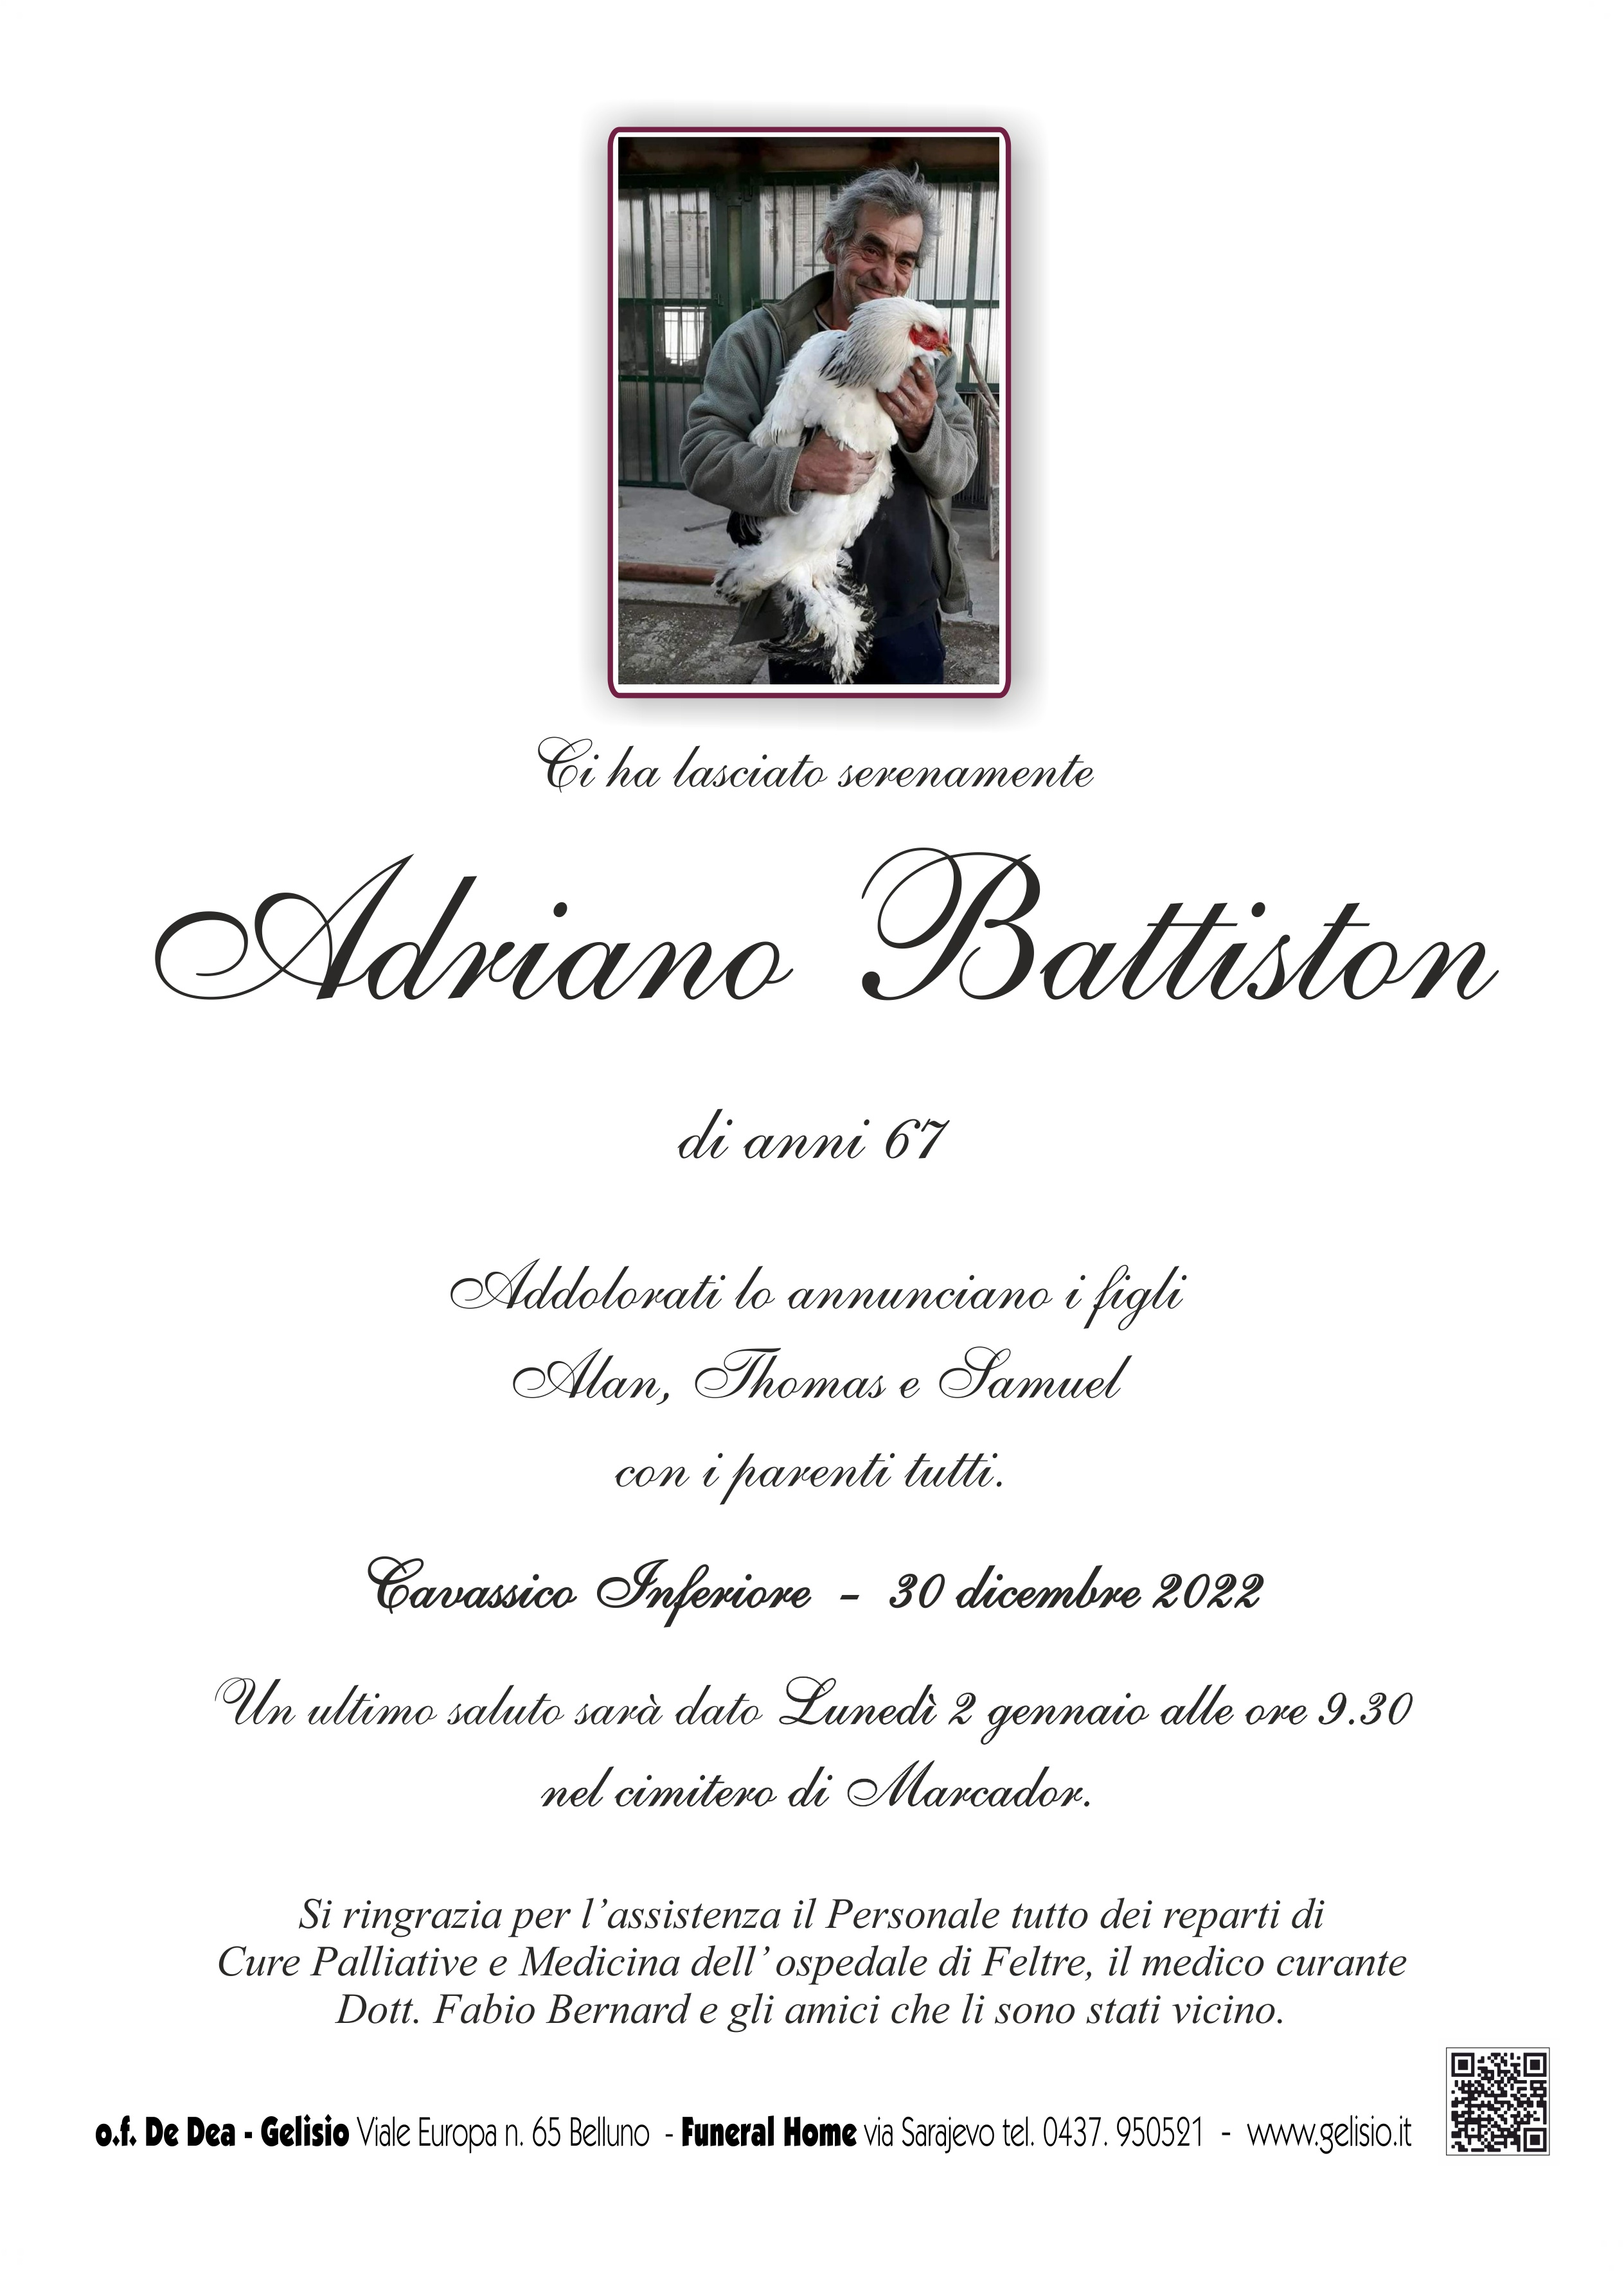 Battiston Adriano